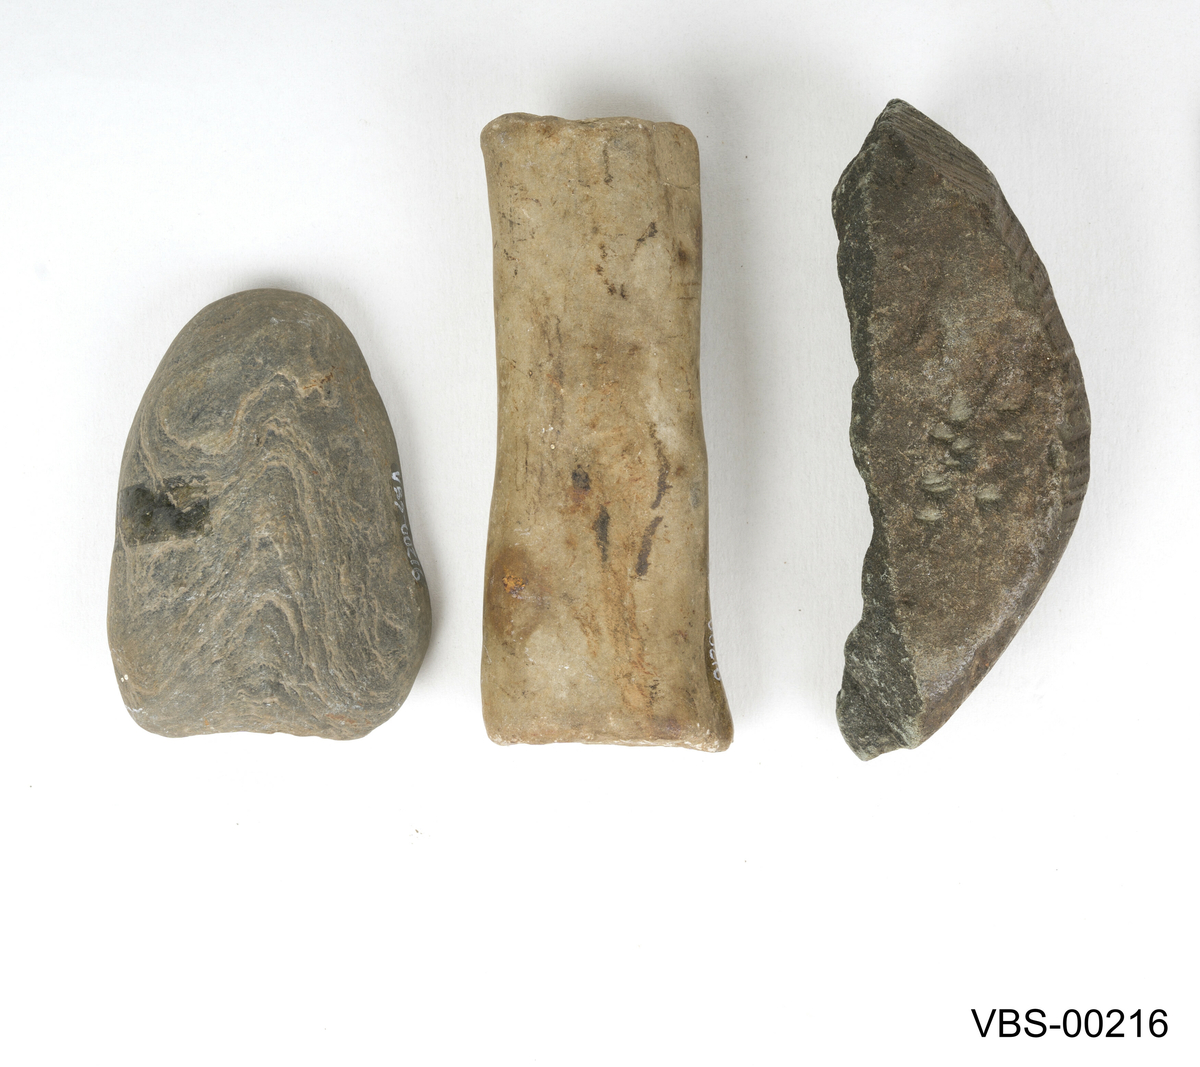 Sett med tre steinverktøy i forskjellige former og størrelser:
(a) Ett stein er langstraktog smalt.
(b) Ett annet avrundet og bearbeidet i en konkav form som redskap.
(c) Det siste ser ut som et ødelagt fragment av en større, i form av en bolle.